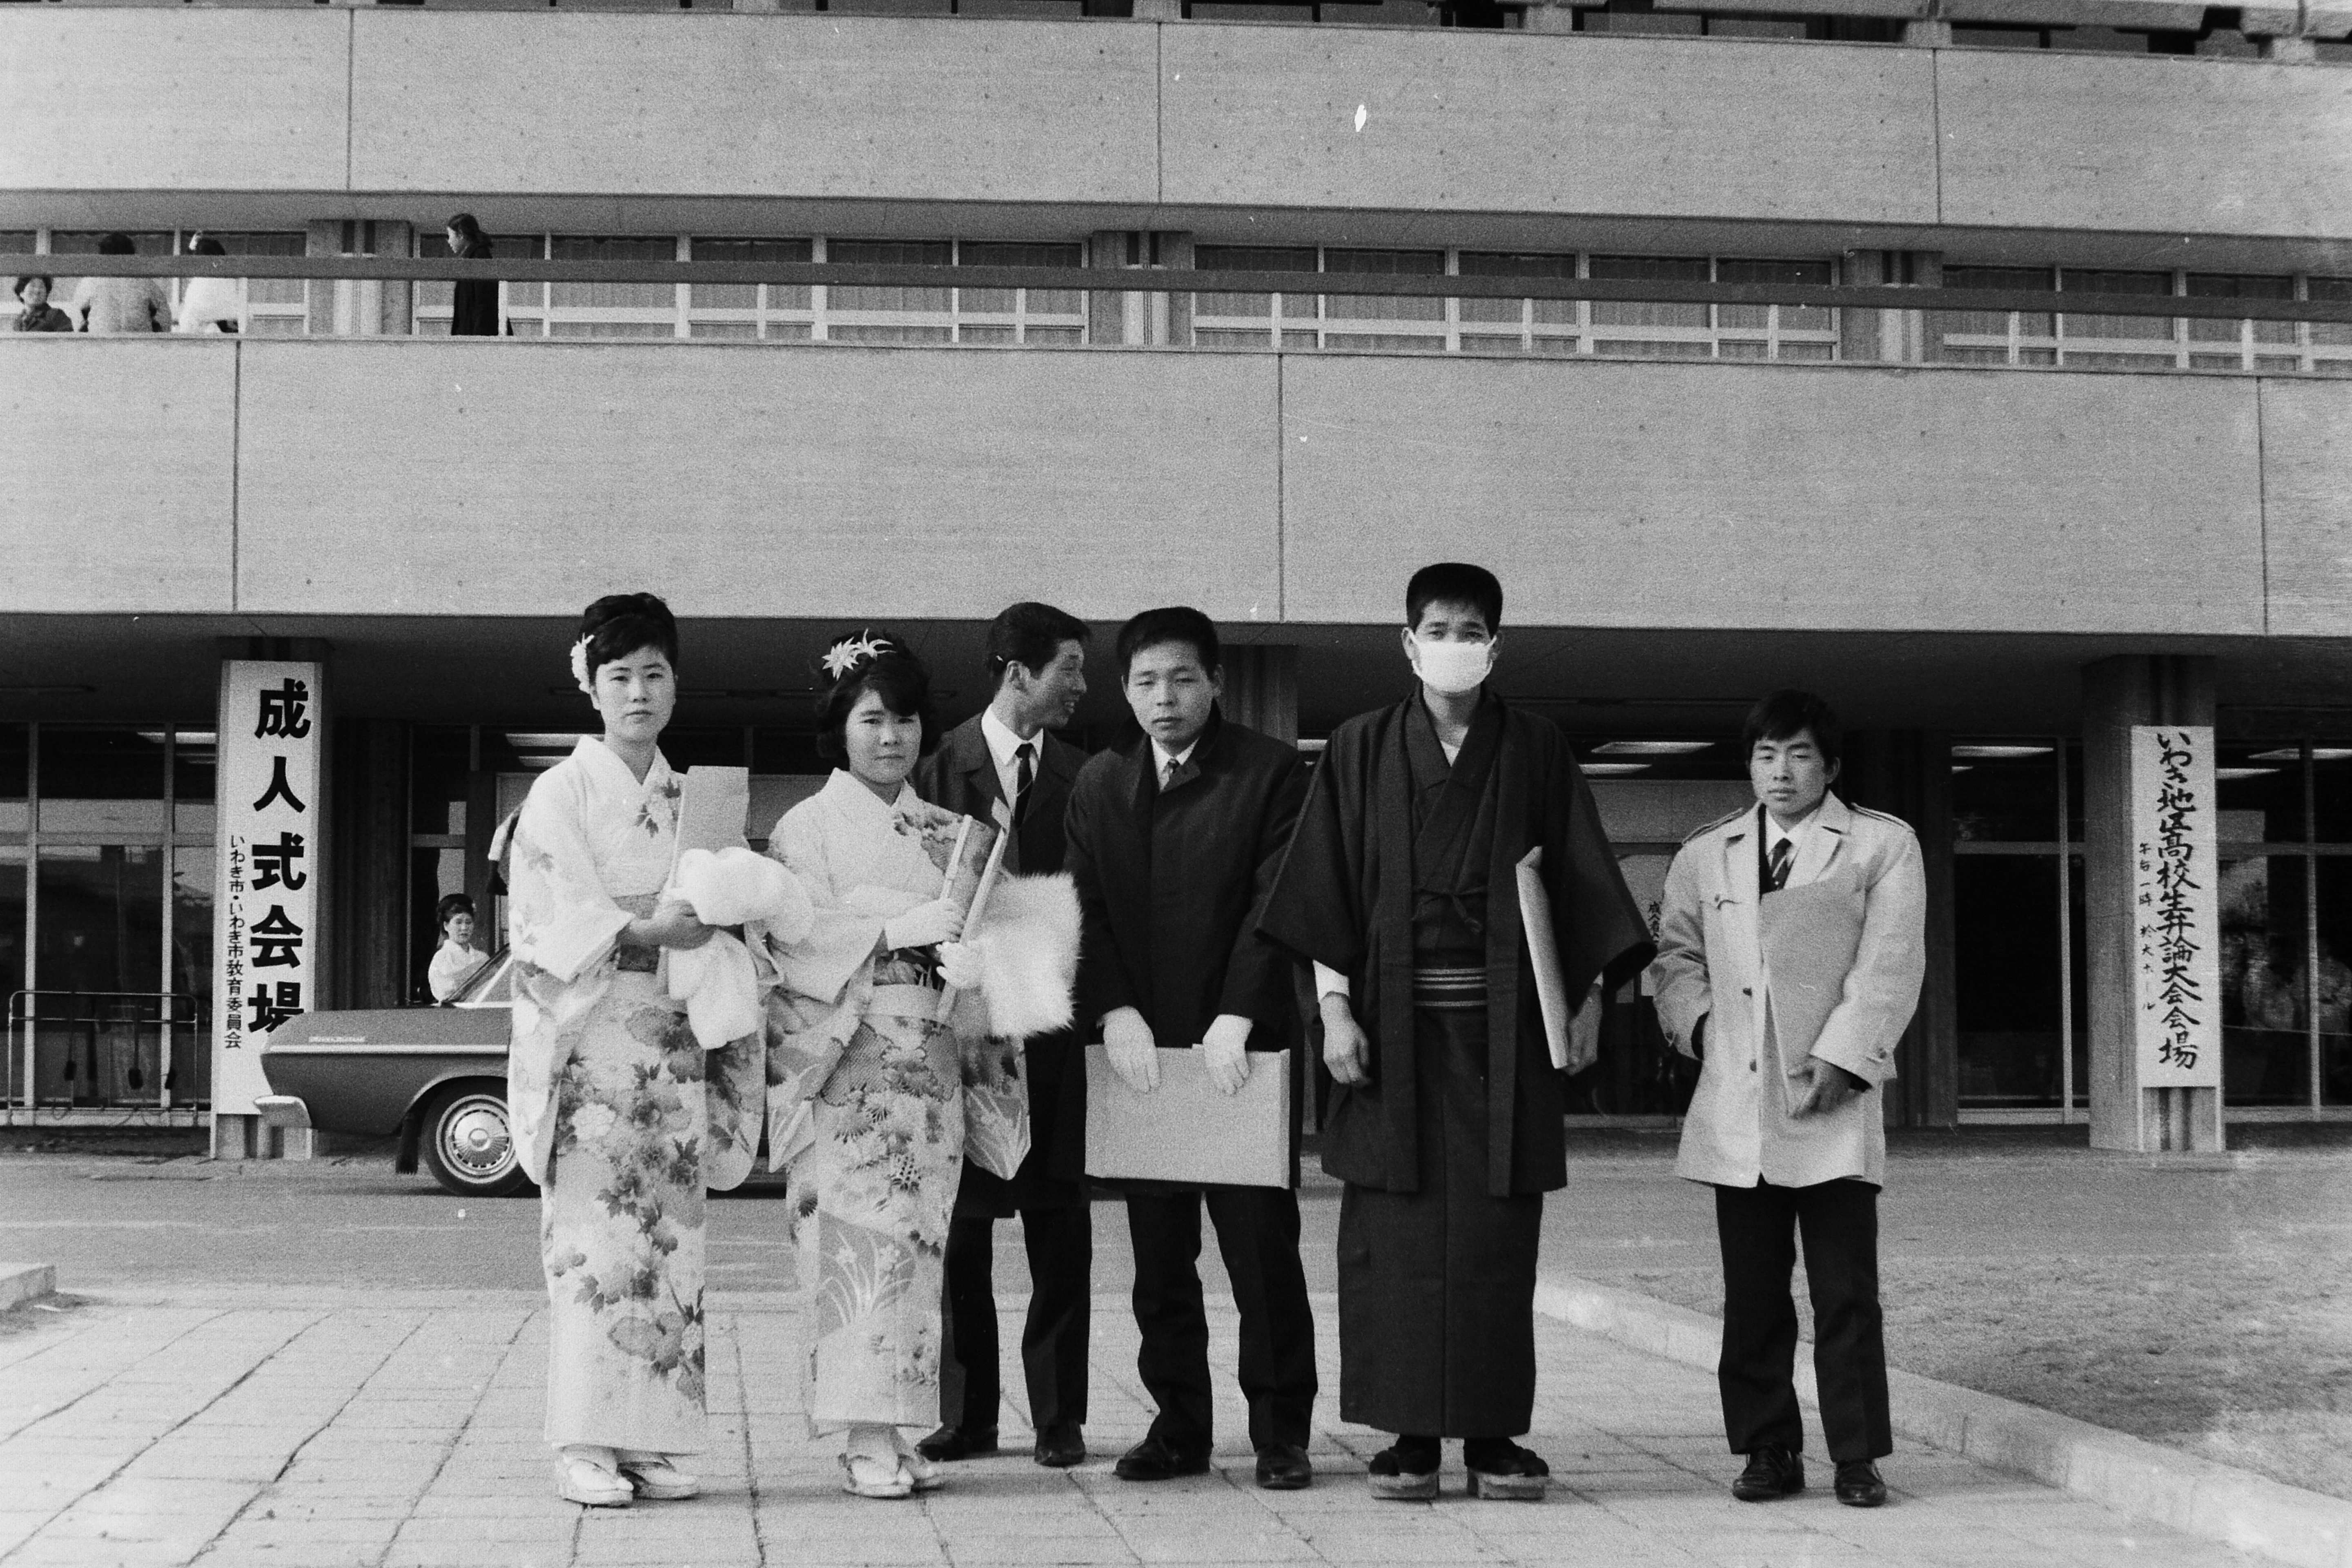 昭和42年の成人式・市平市民会館前 女性の晴れ着は袖の短い訪問着(昭和42年1月いわき市撮影)